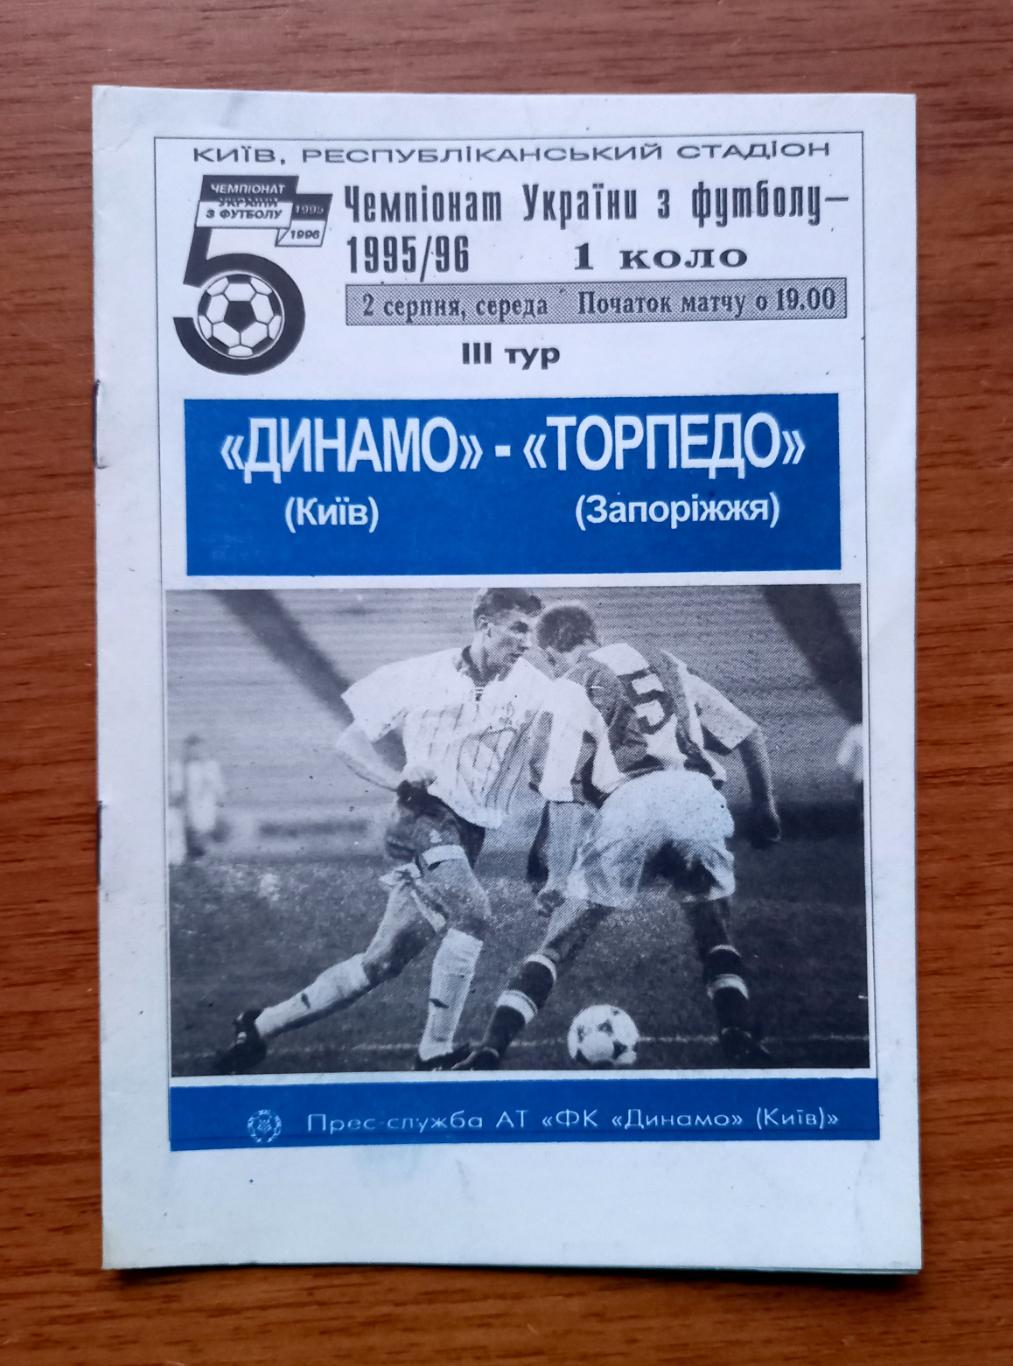 Футбол. Программа. Ч-т Украины 1995/96. Динамо Киев - Торпедо Запорожье